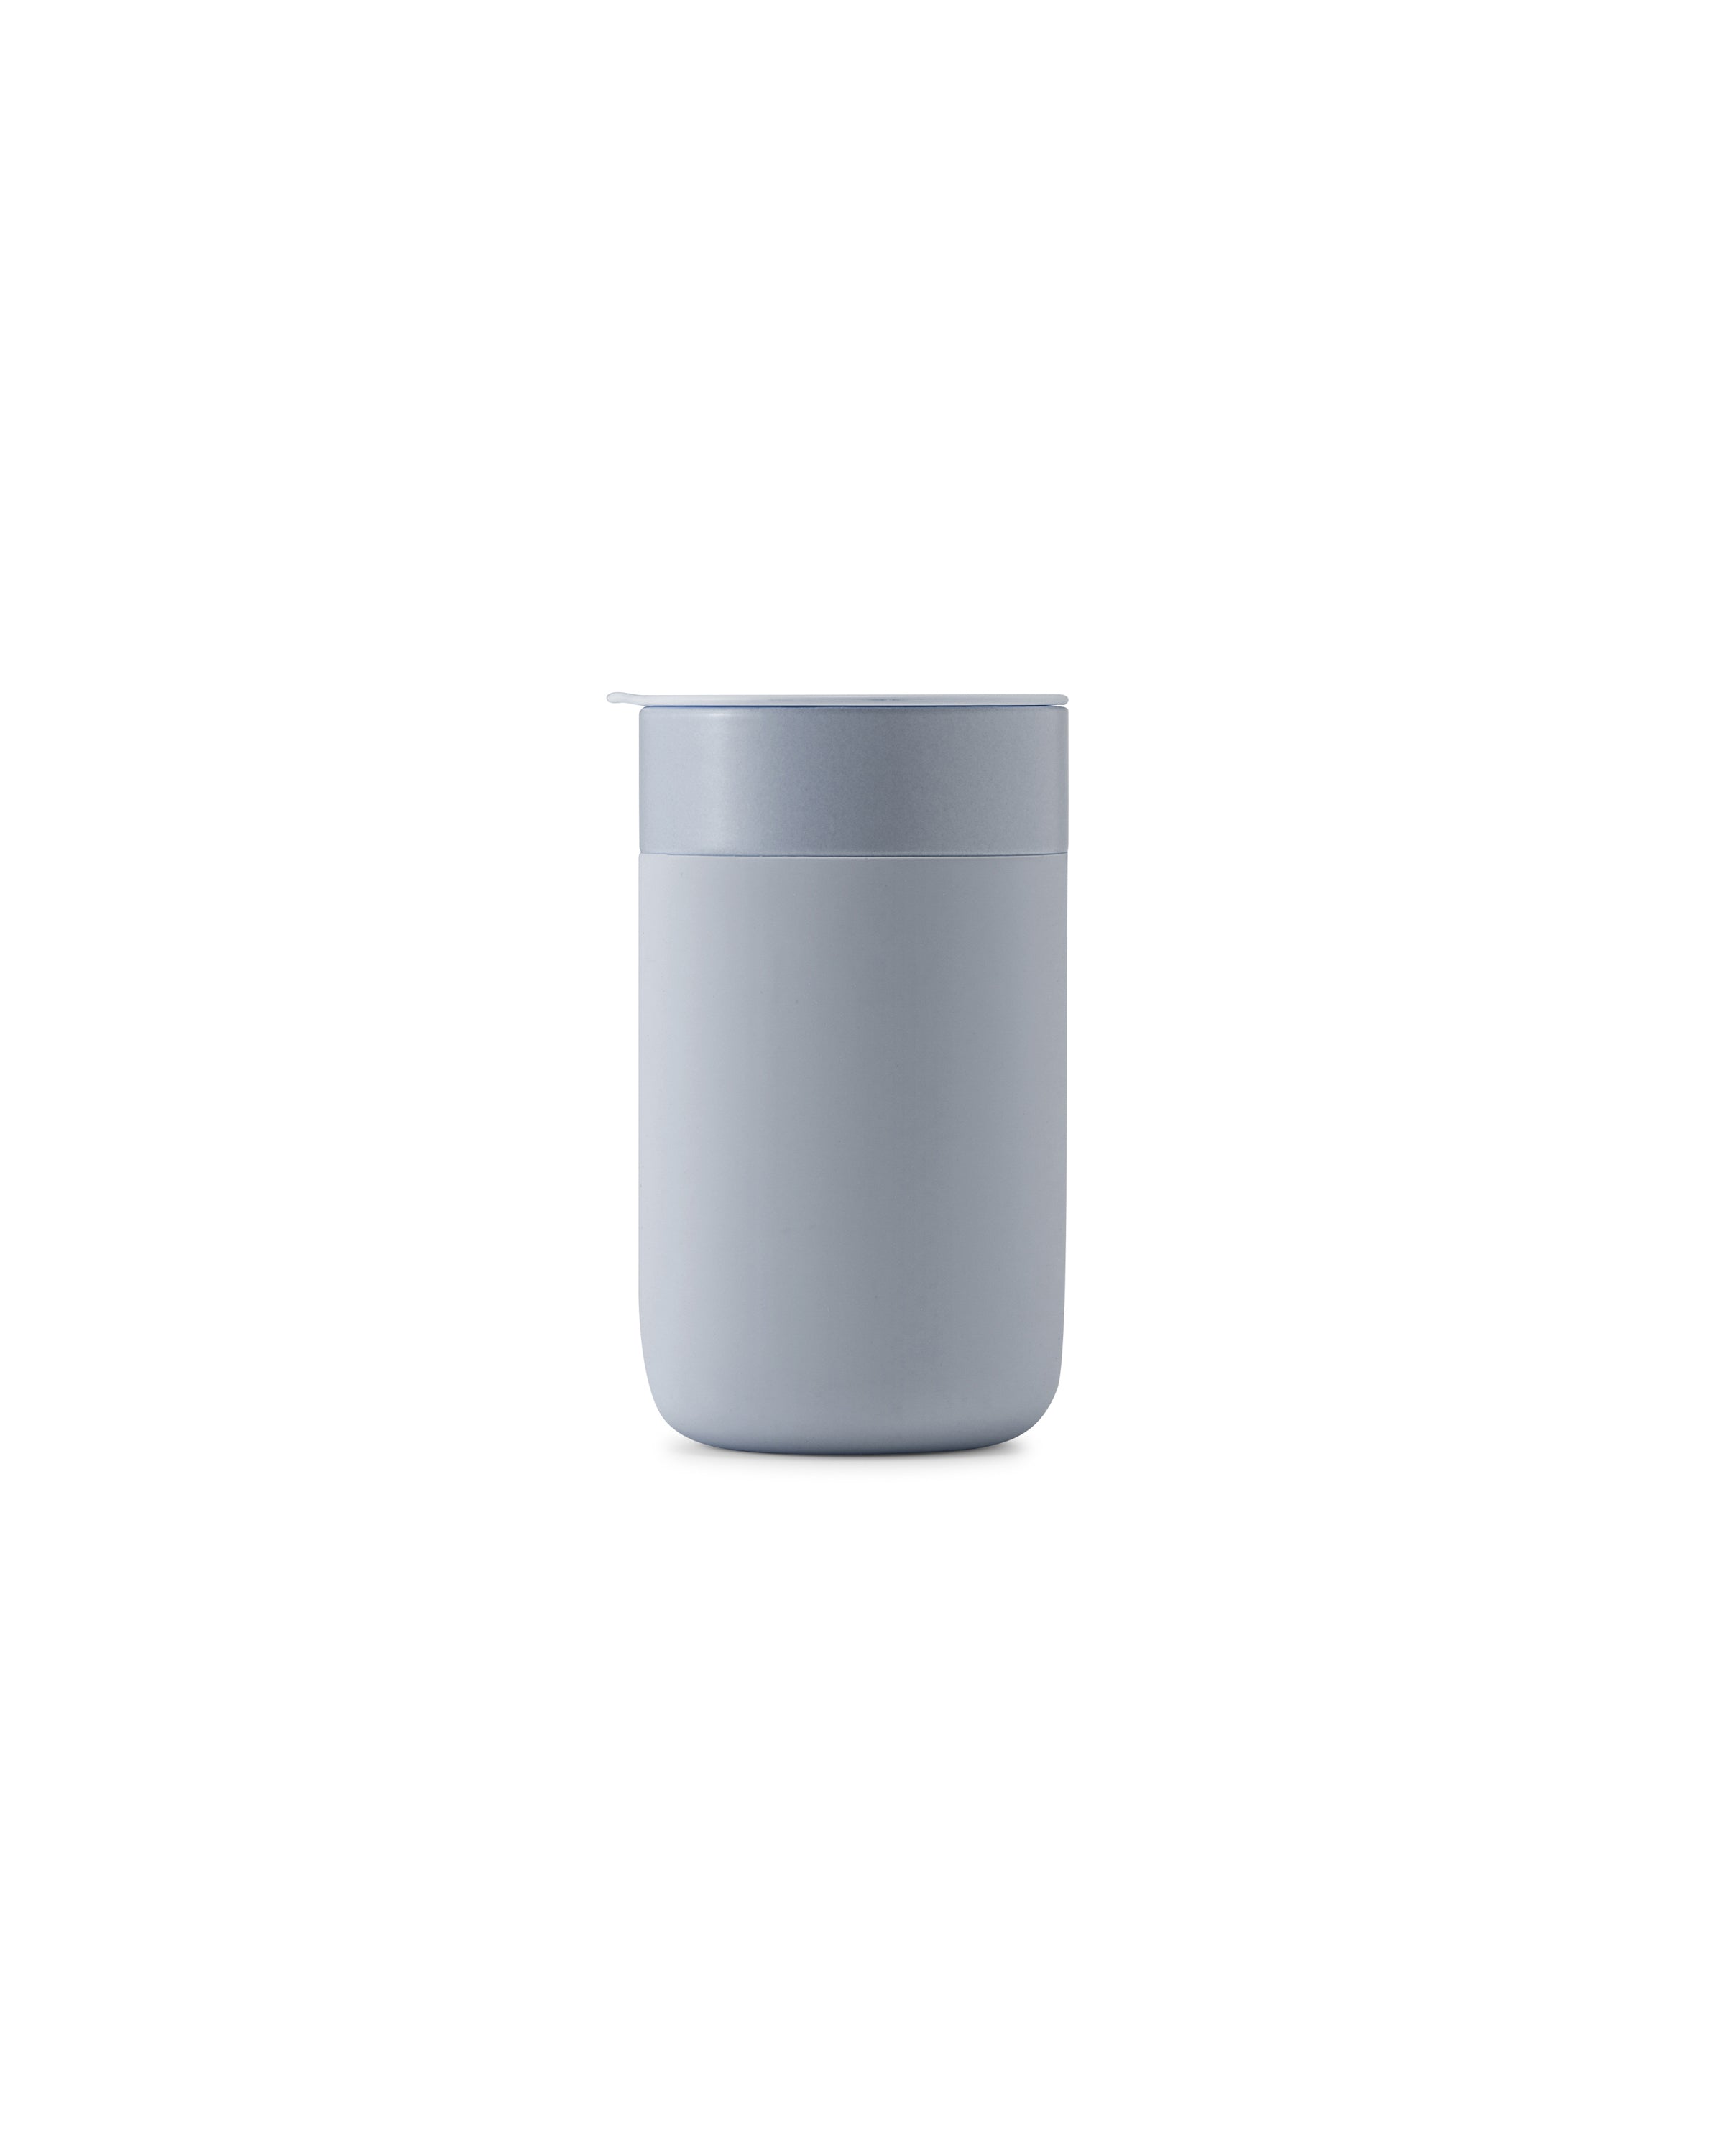 W&P Porter Ceramic Mug 16oz — Package + Press